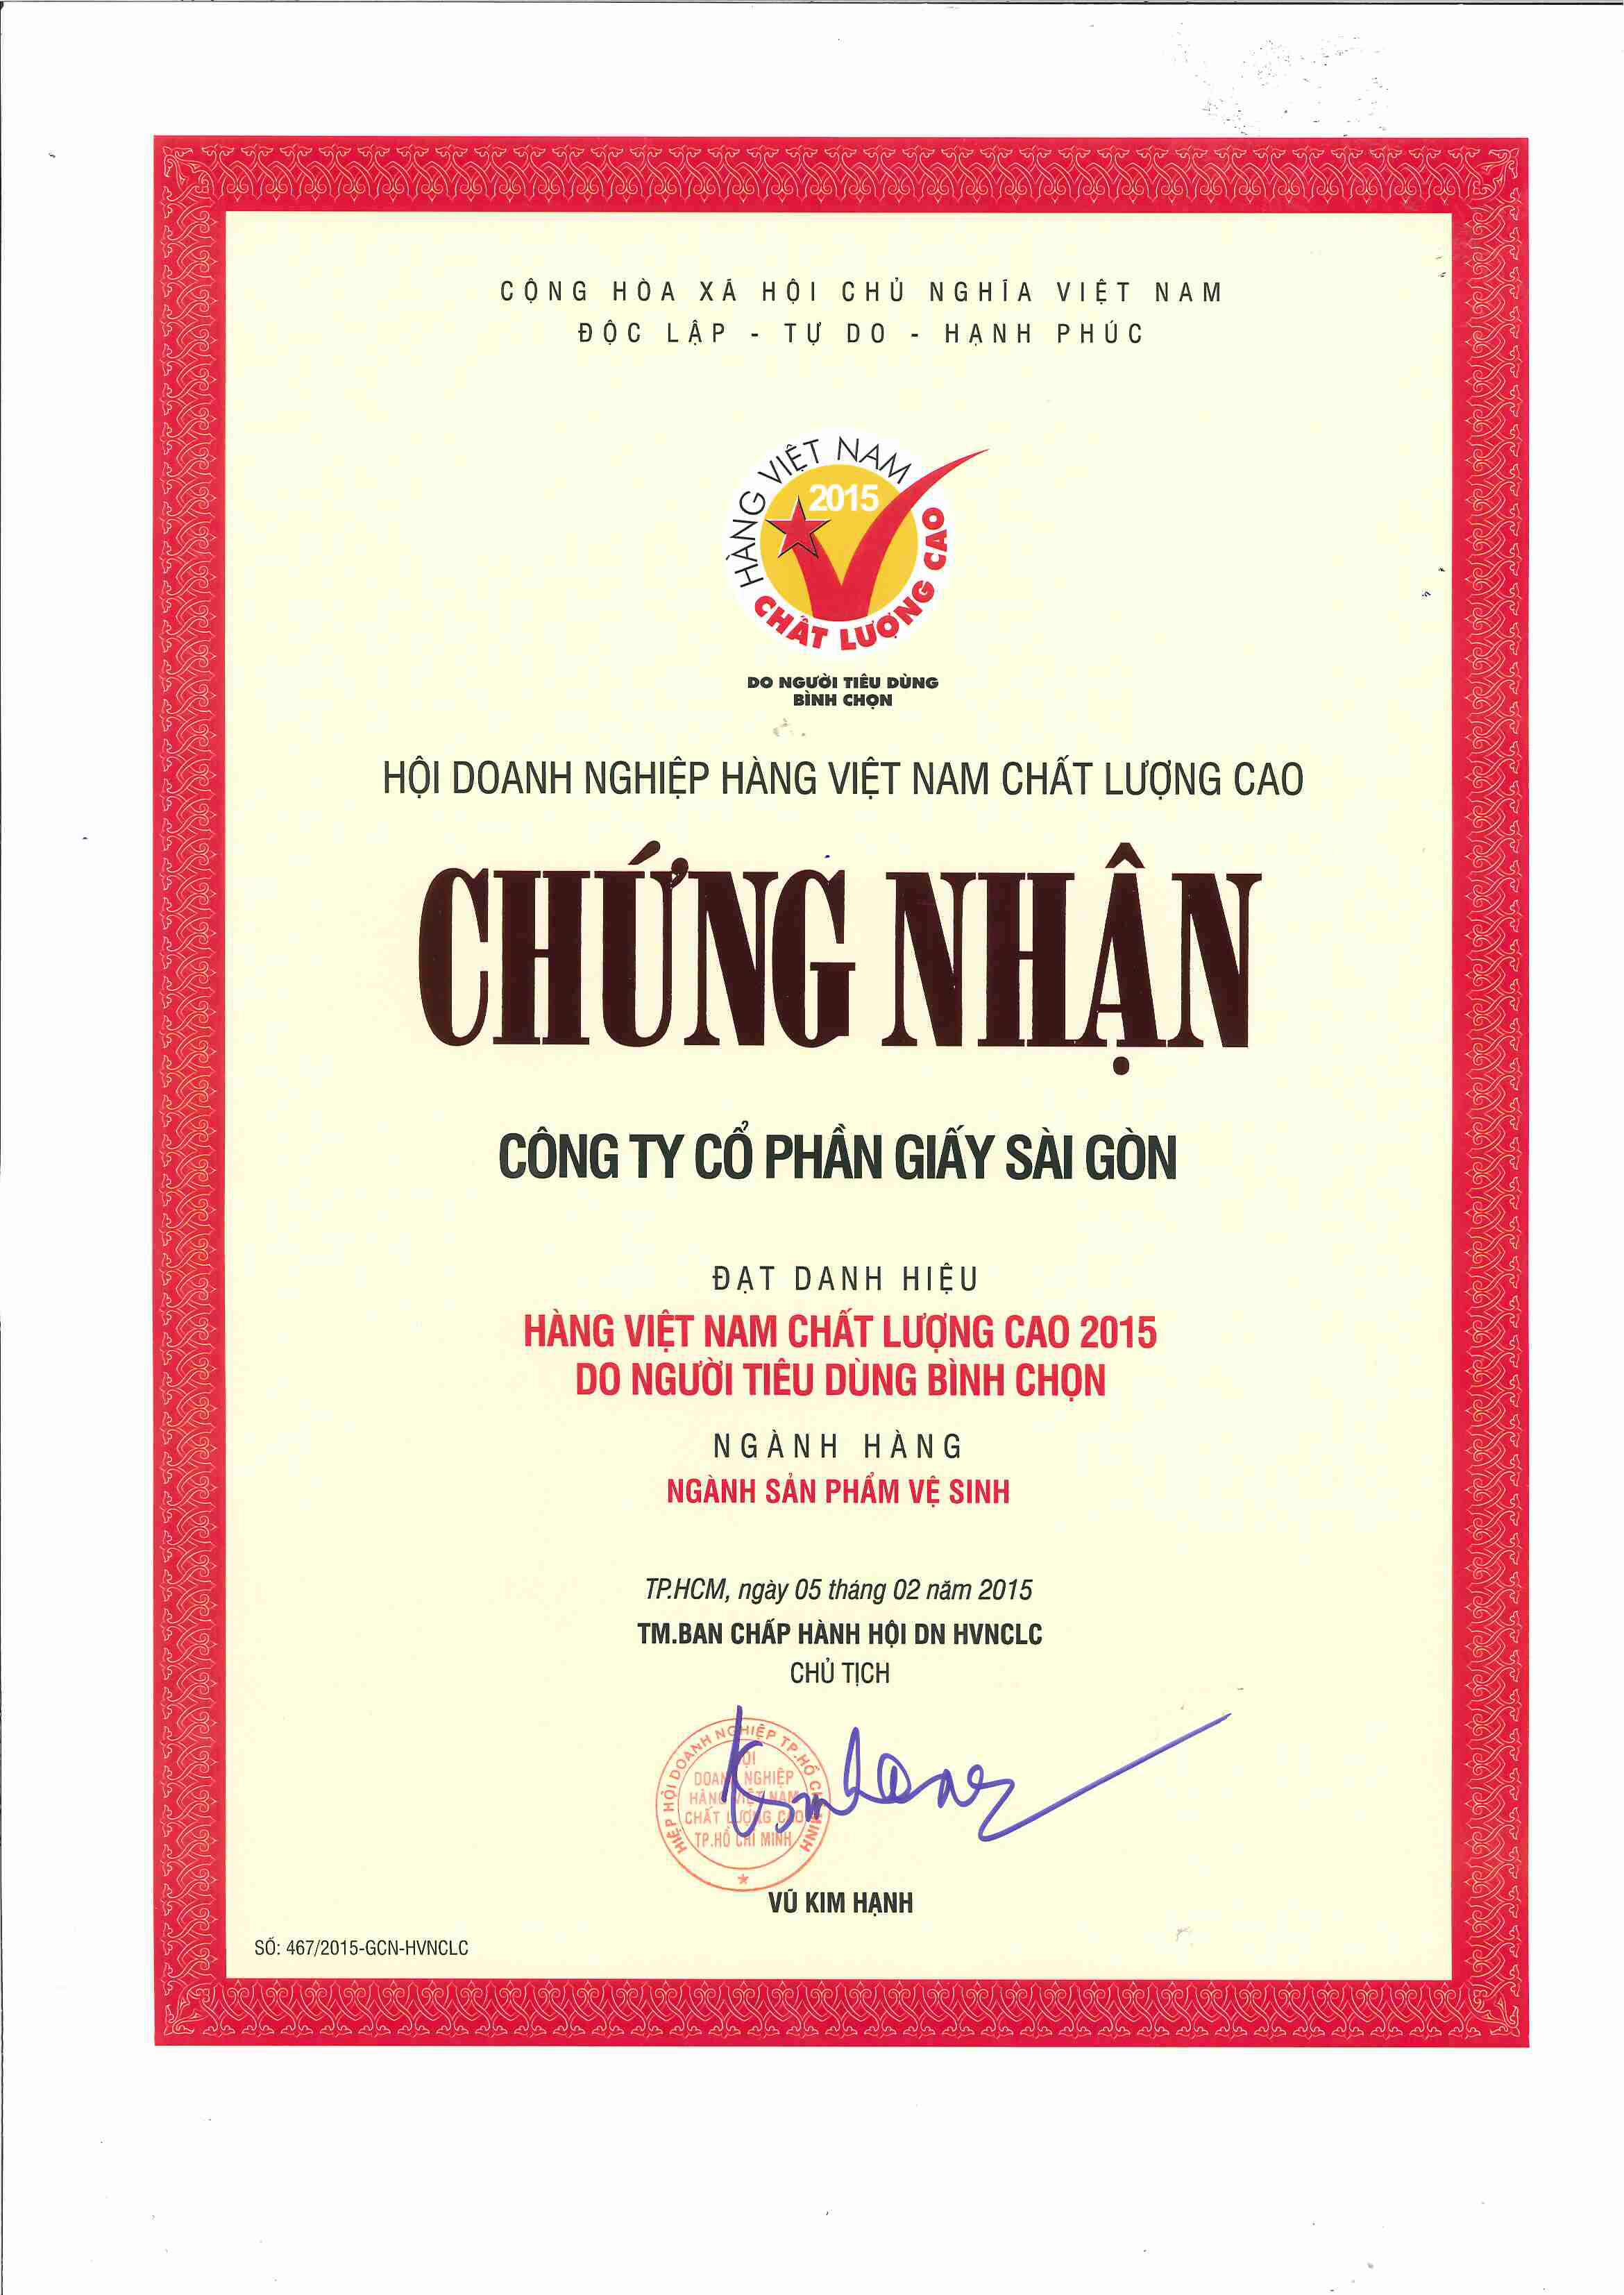 Danh hiệu Hàng Việt Nam Chất lượng cao năm 2015